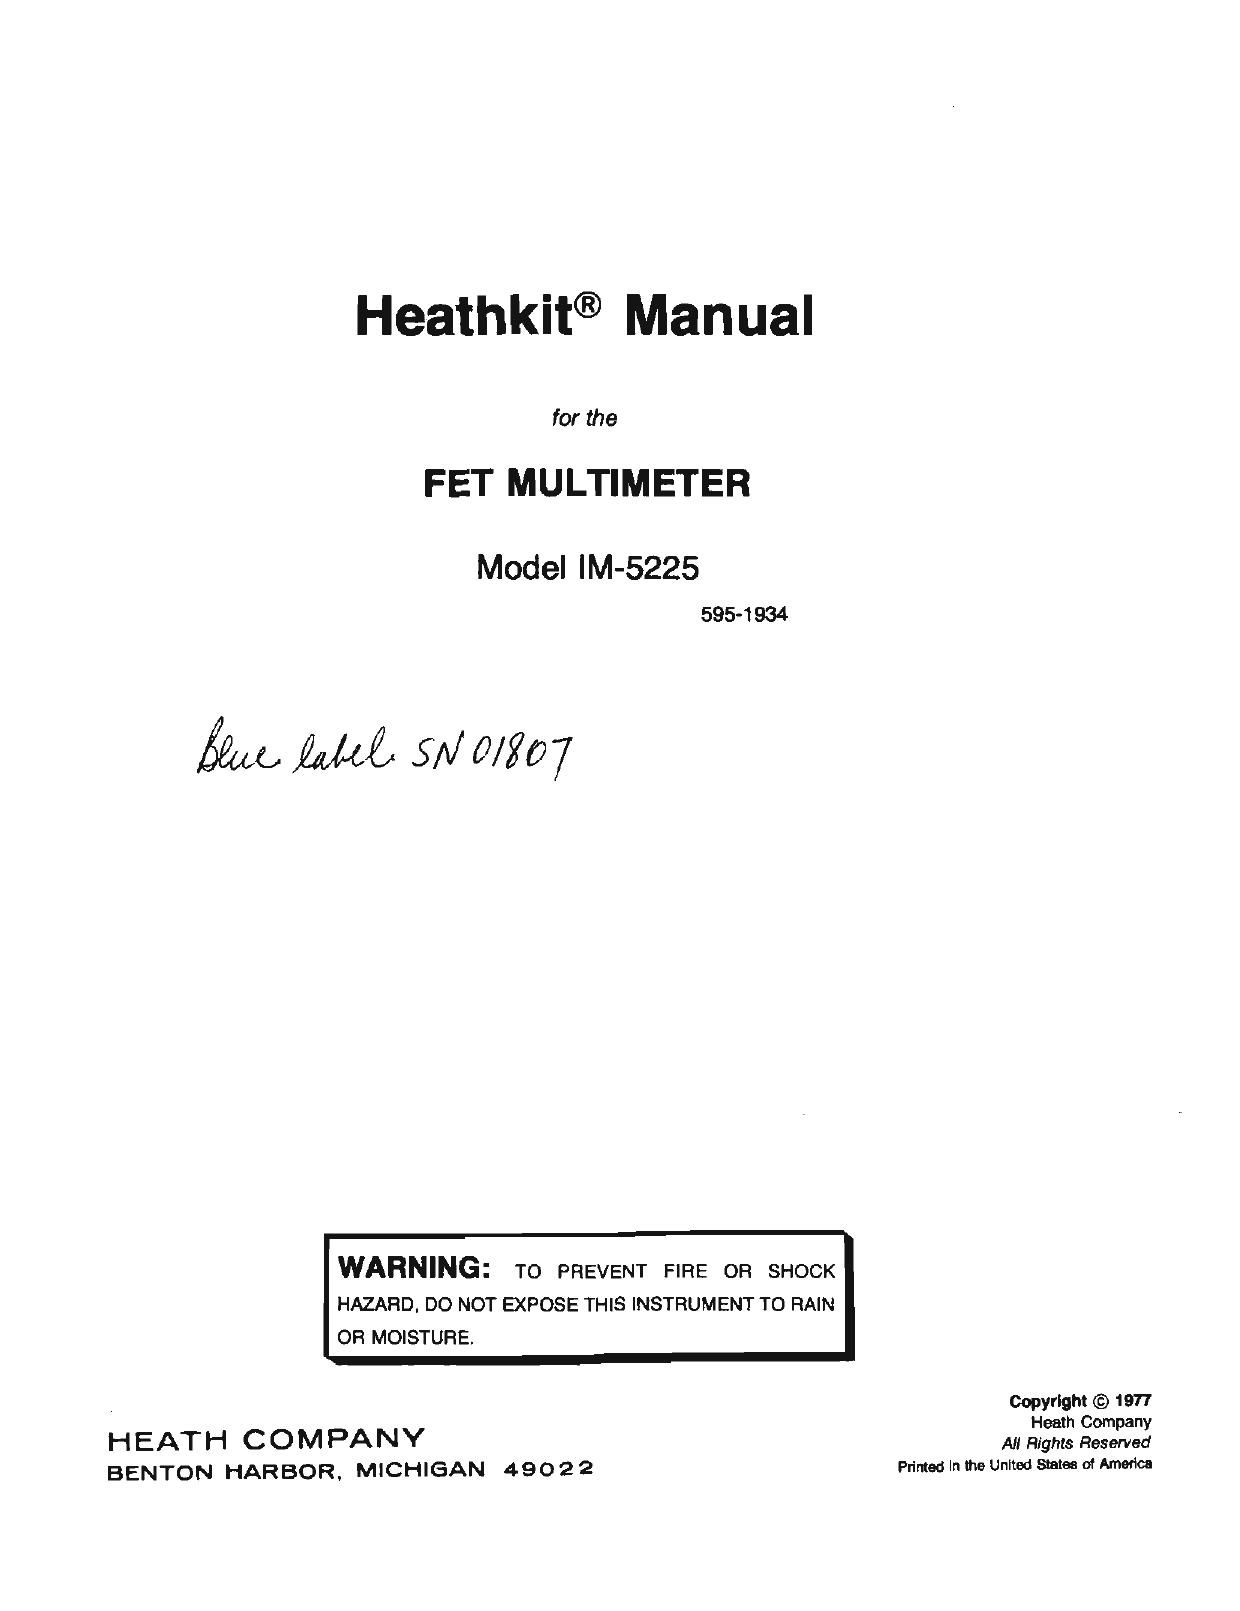 Heathkit IM 5225 Manual